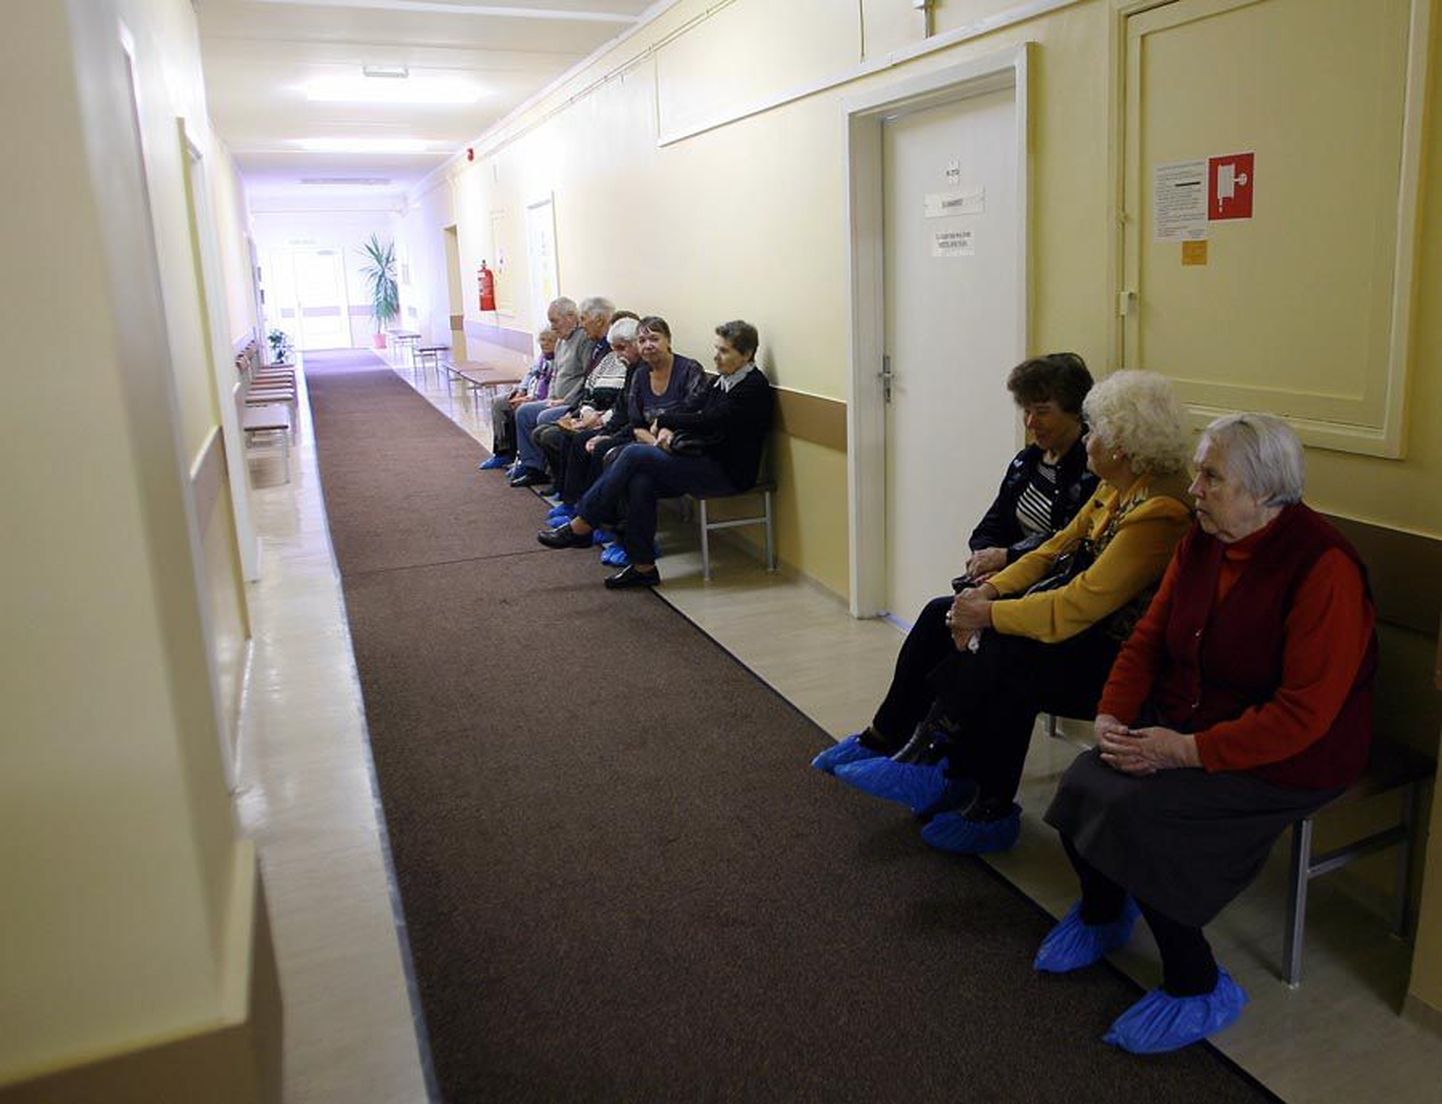 Viljandi haigla polikliiniku tühjas koridoris on esimesel streigipäeval erandlikult rahvarohke silmaarsti kabineti uksetagune, kus eakad patsiendid ootavad kaelõikust. Kell üks lubatakse nad vastu võtta.